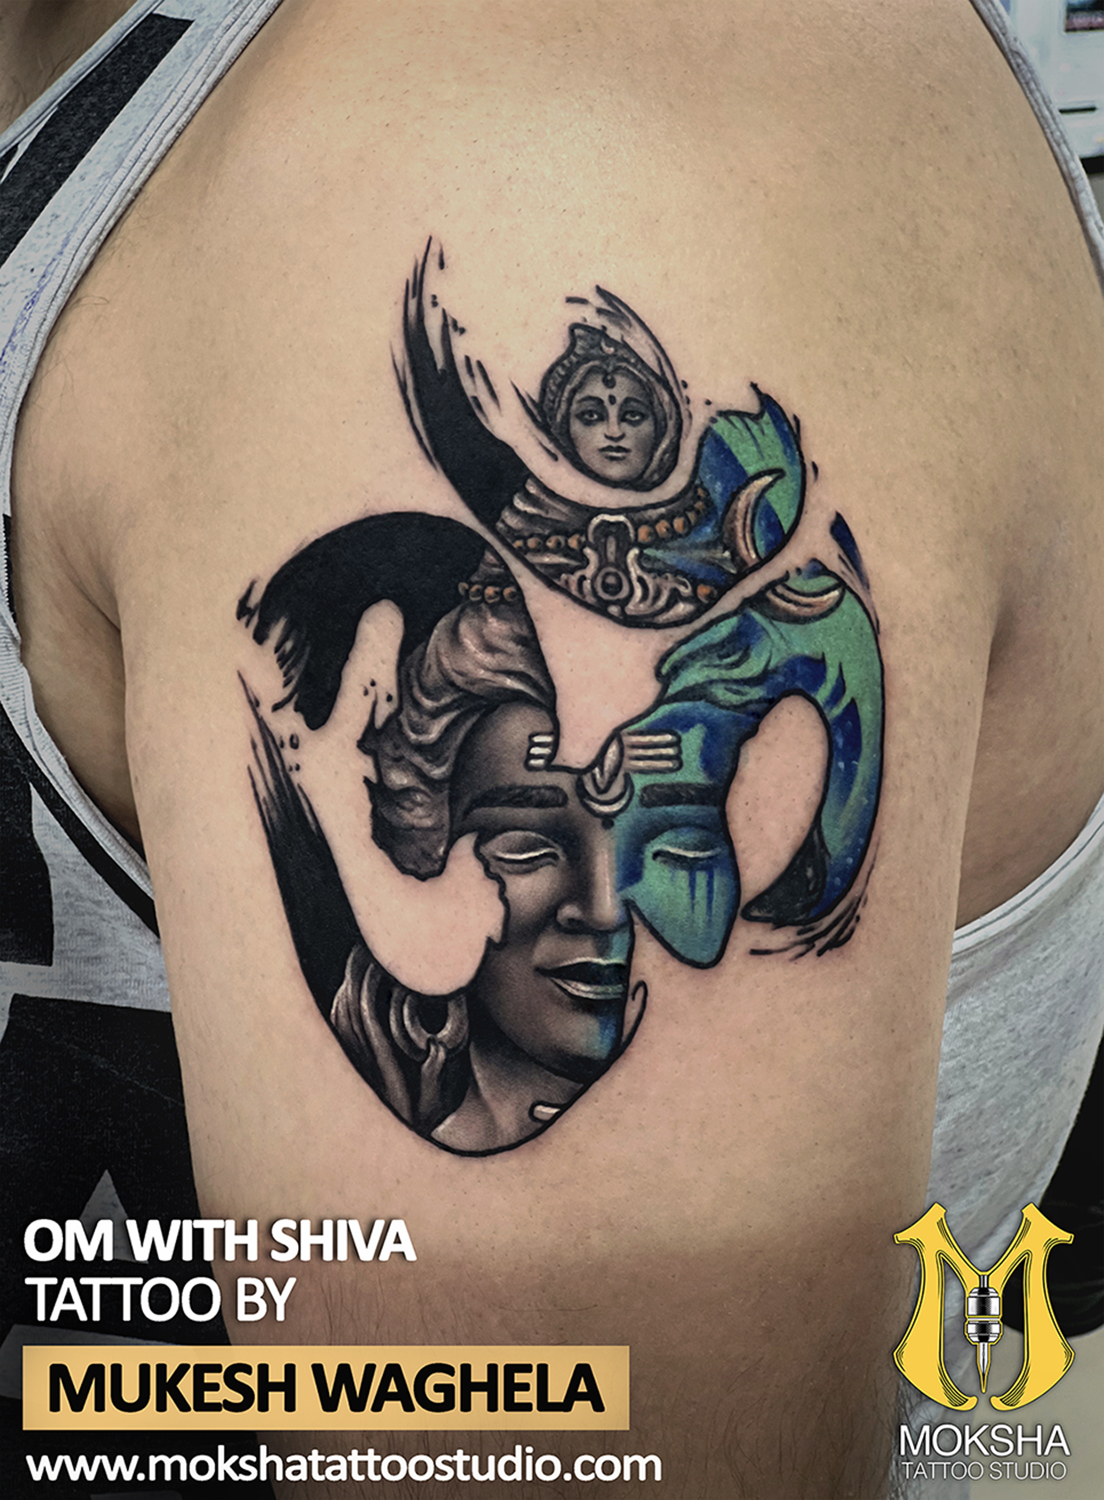 Lord shiva Trishul tattoo images | Tattoo images, Tattoos, Shiva tattoo